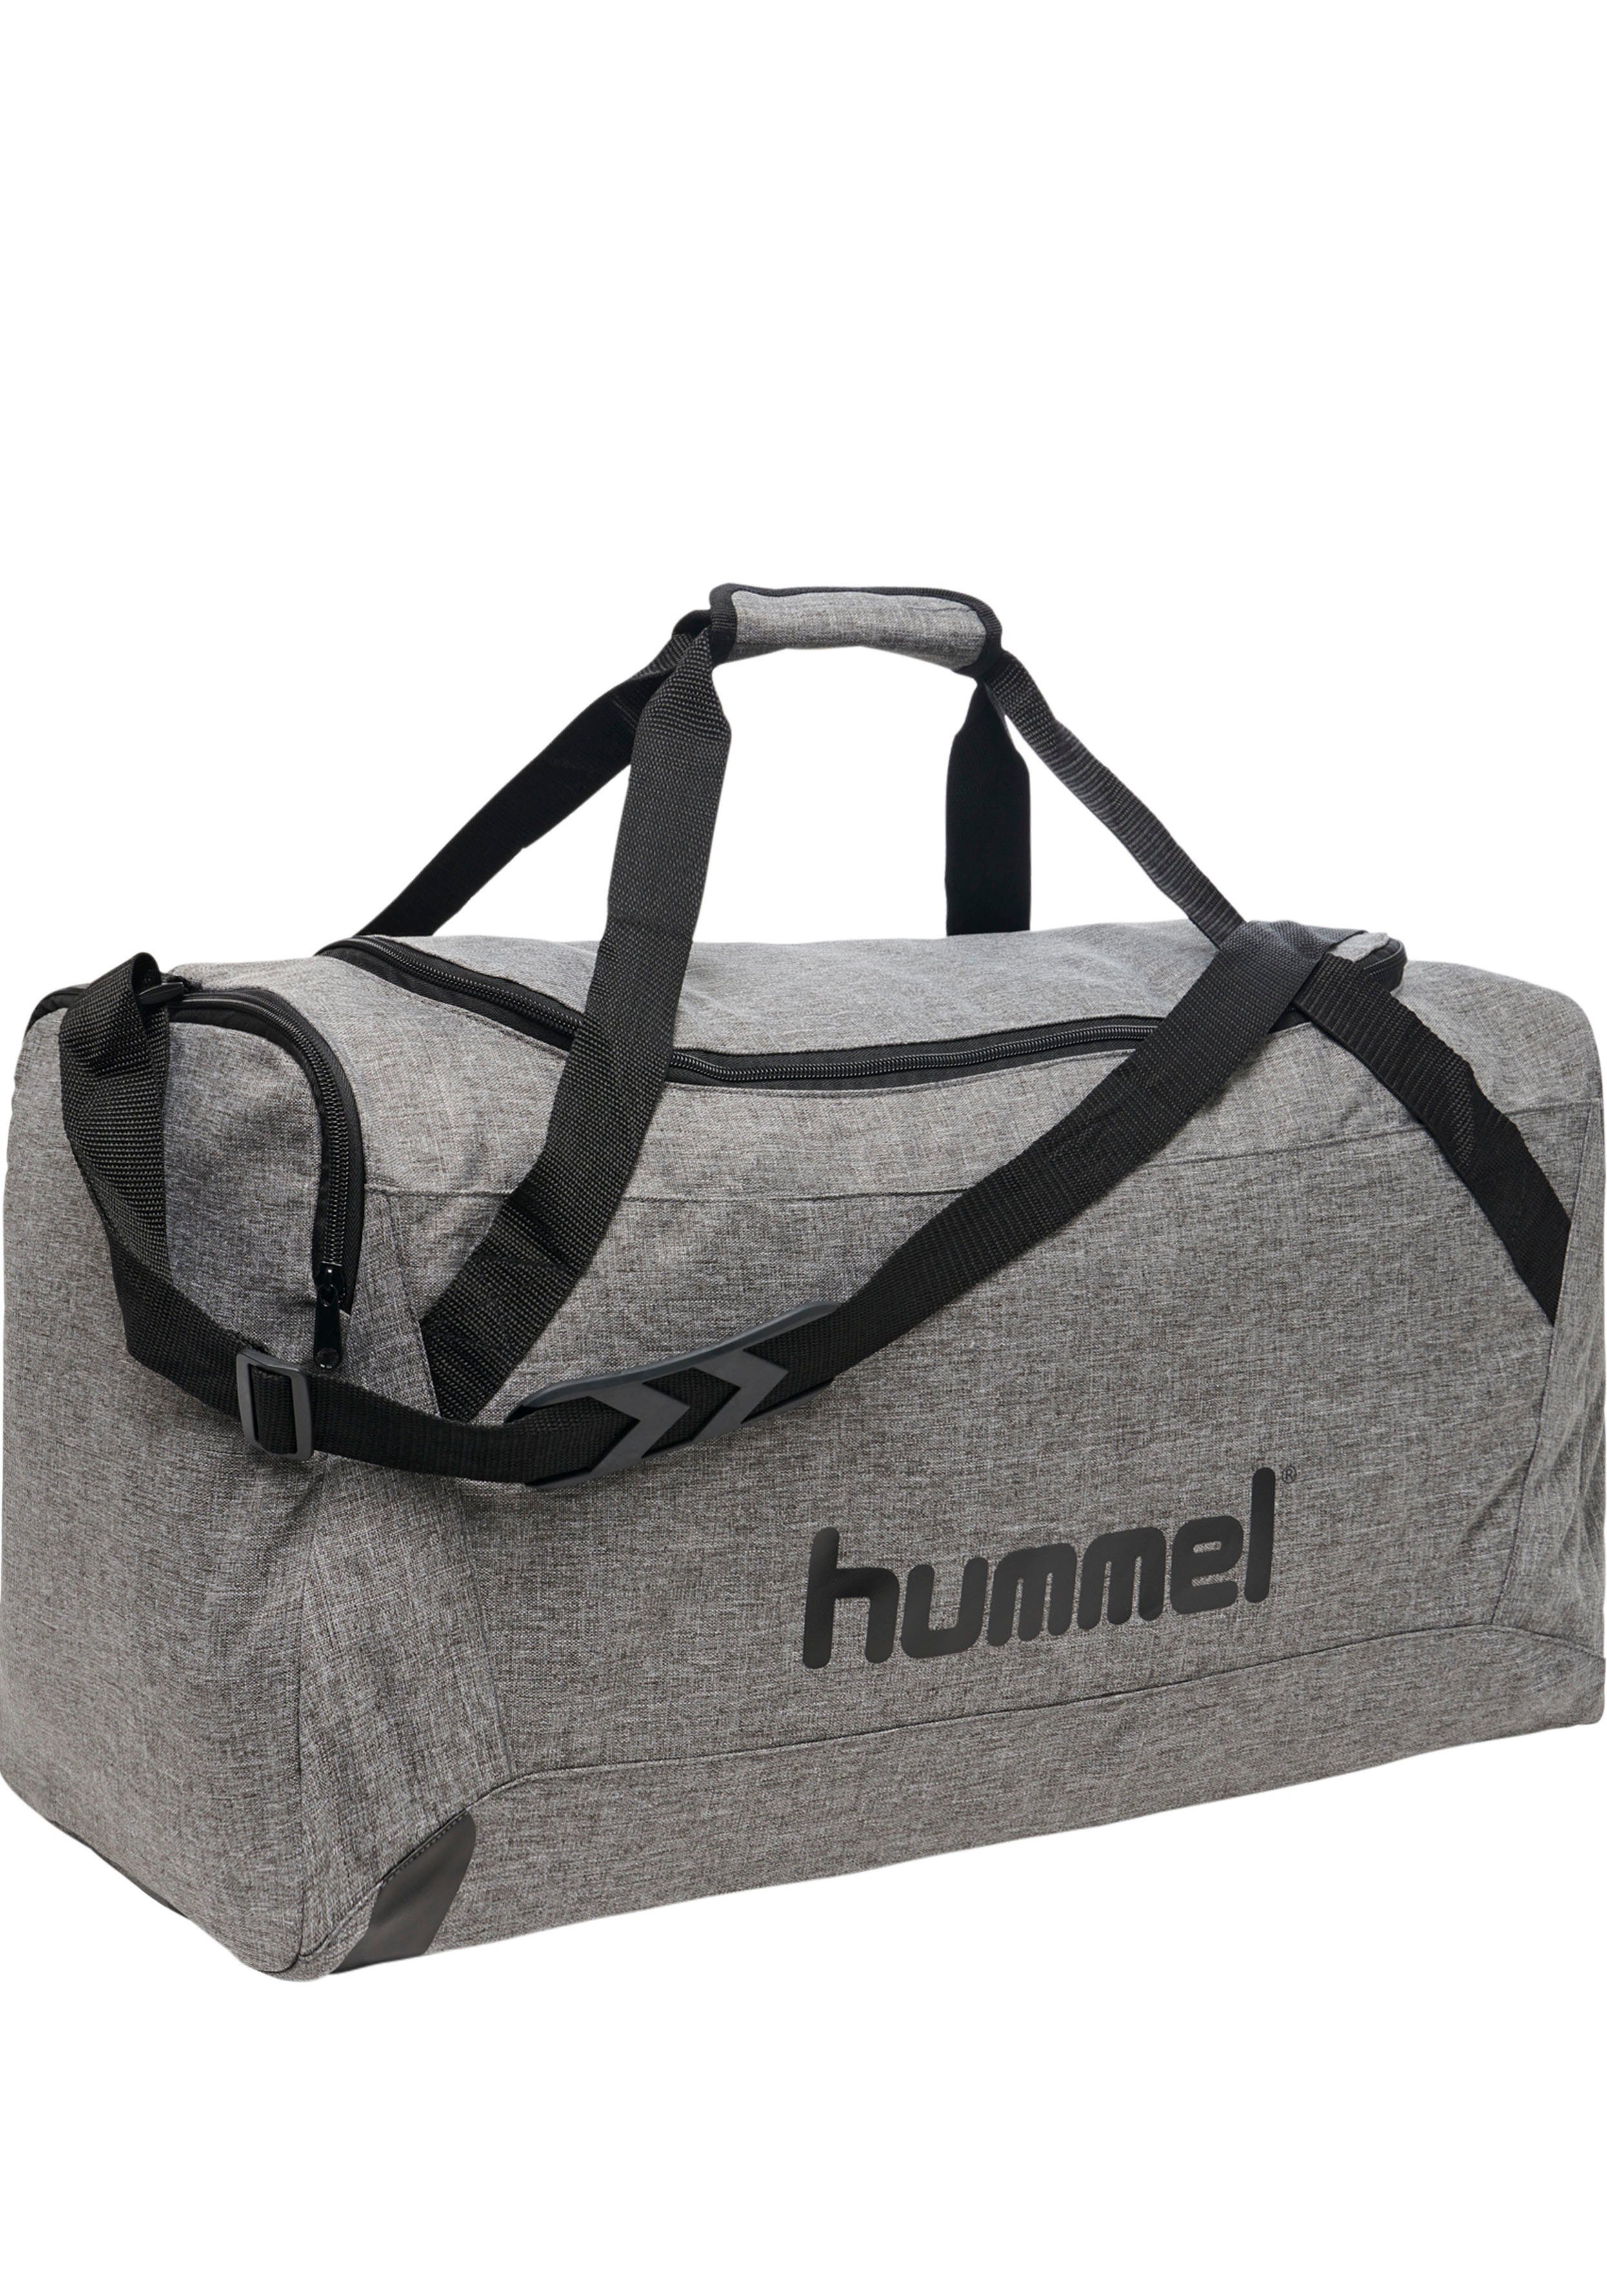 hummel Sporttasche »CORE SPORTS BAG« online kaufen | OTTO